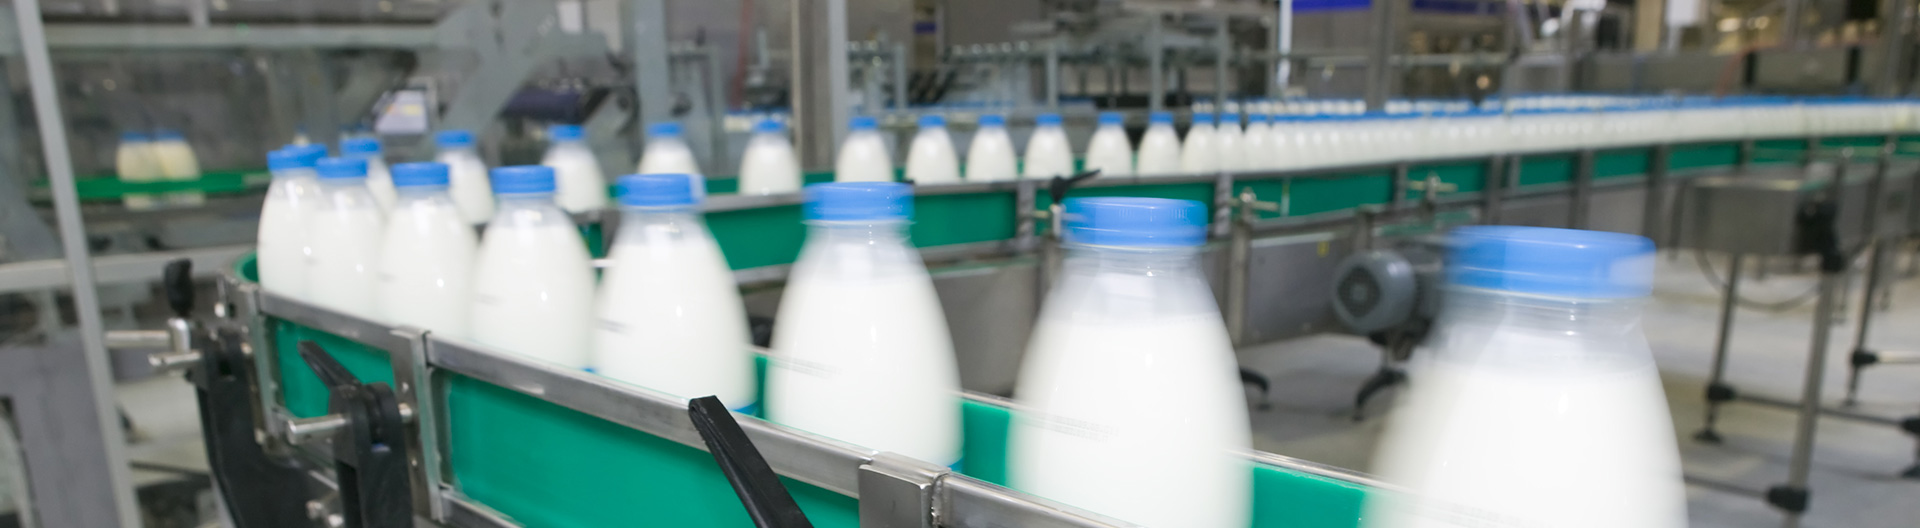 Dynamic checkweighing of milk bottles